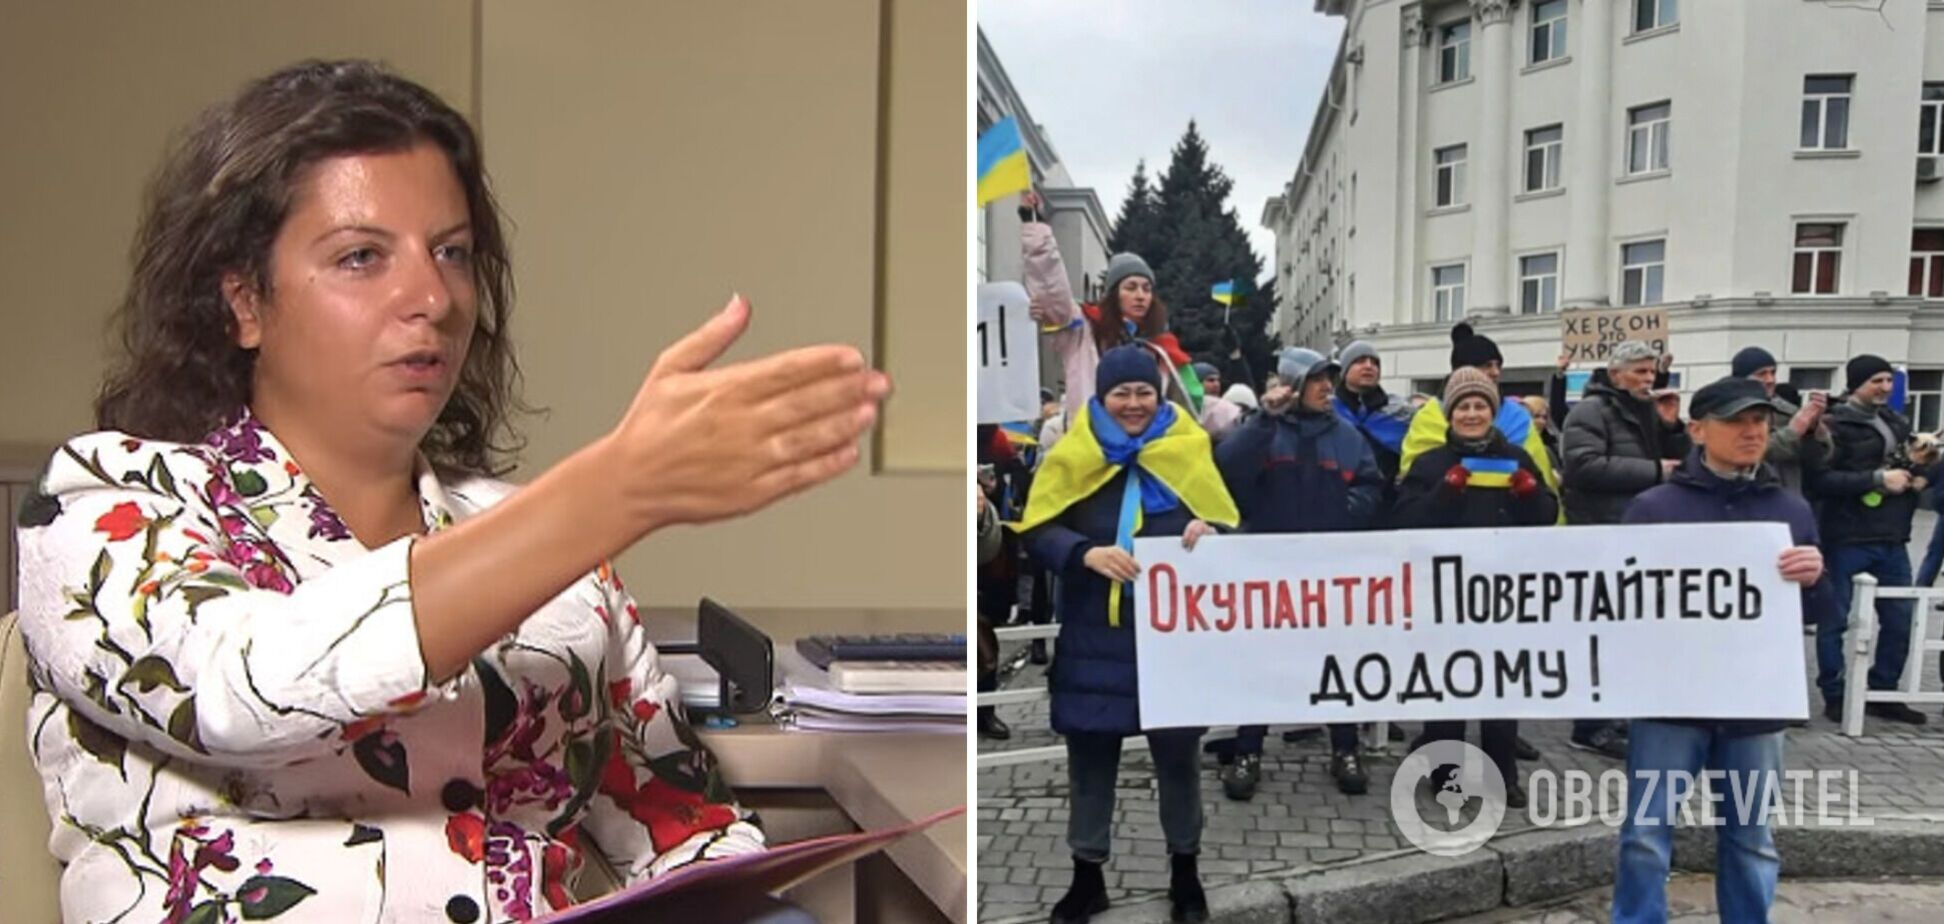 'Как бы было здорово остановить кровопролитие': пропагандистка Симоньян 'миротворческим' заявлением довела россиян до истерики. Видео